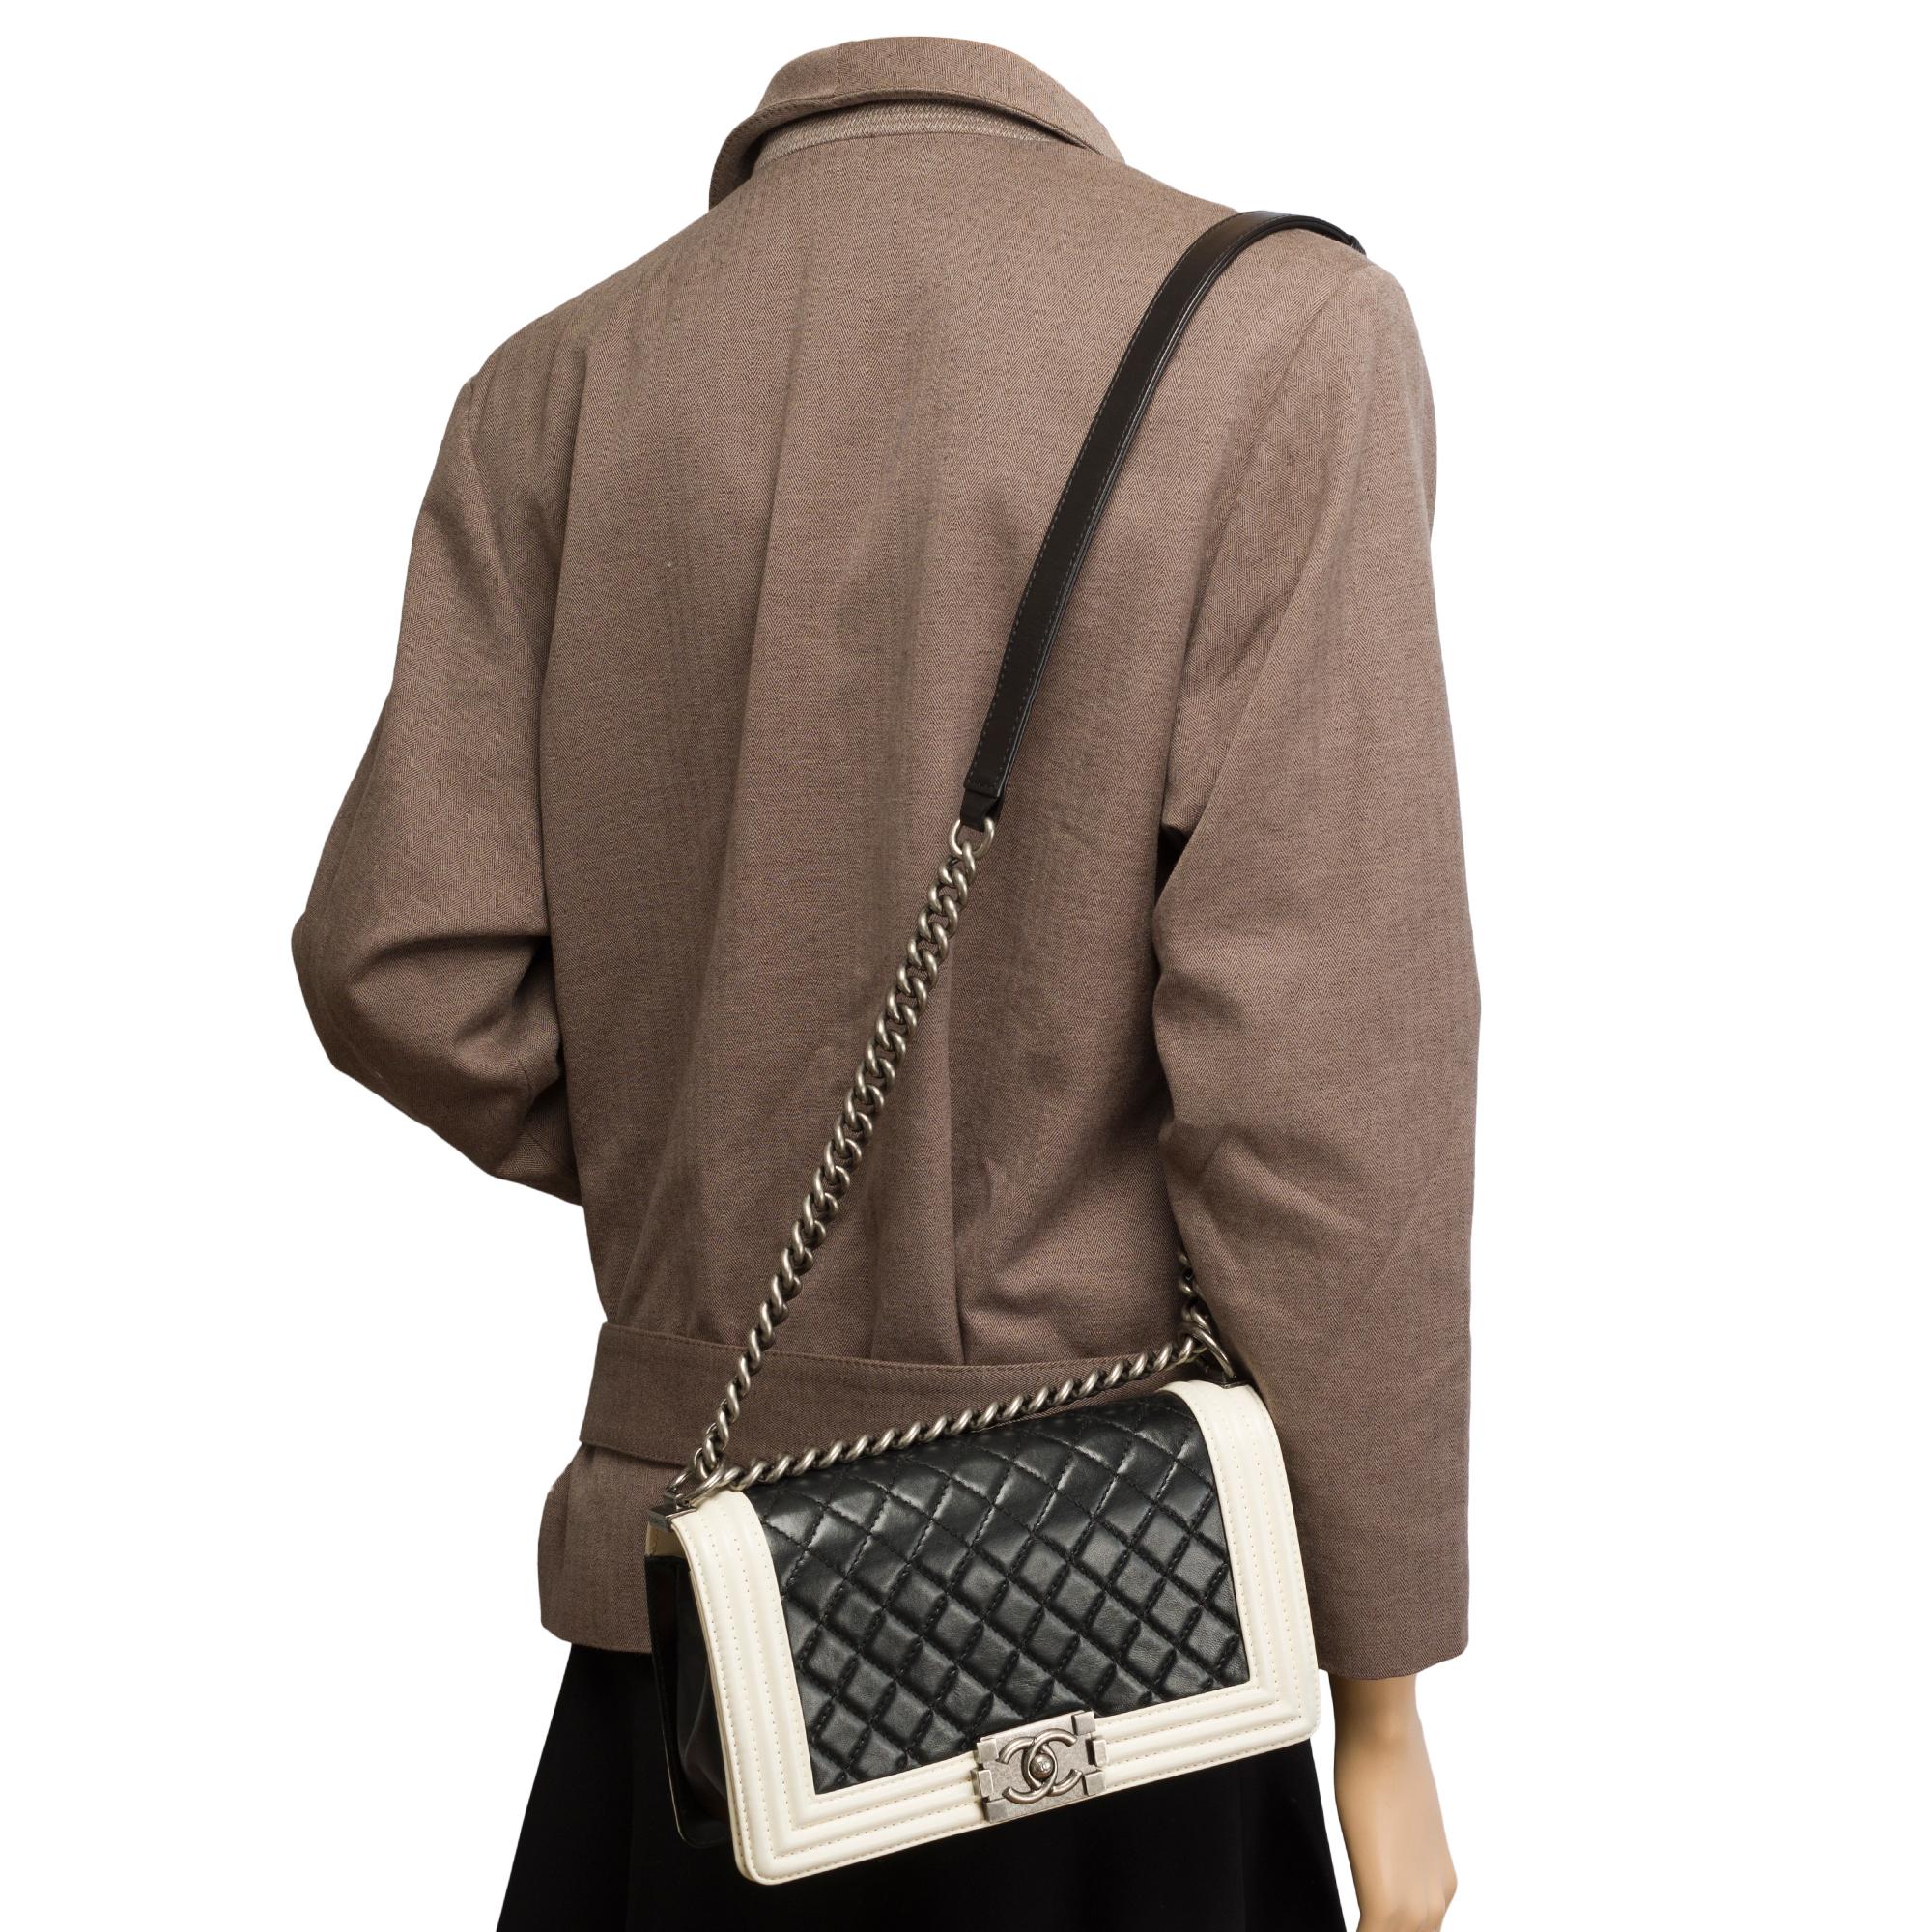 Chanel Boy Old medium(25cm) shoulder bag in Black & White quilted leather, SHW 7